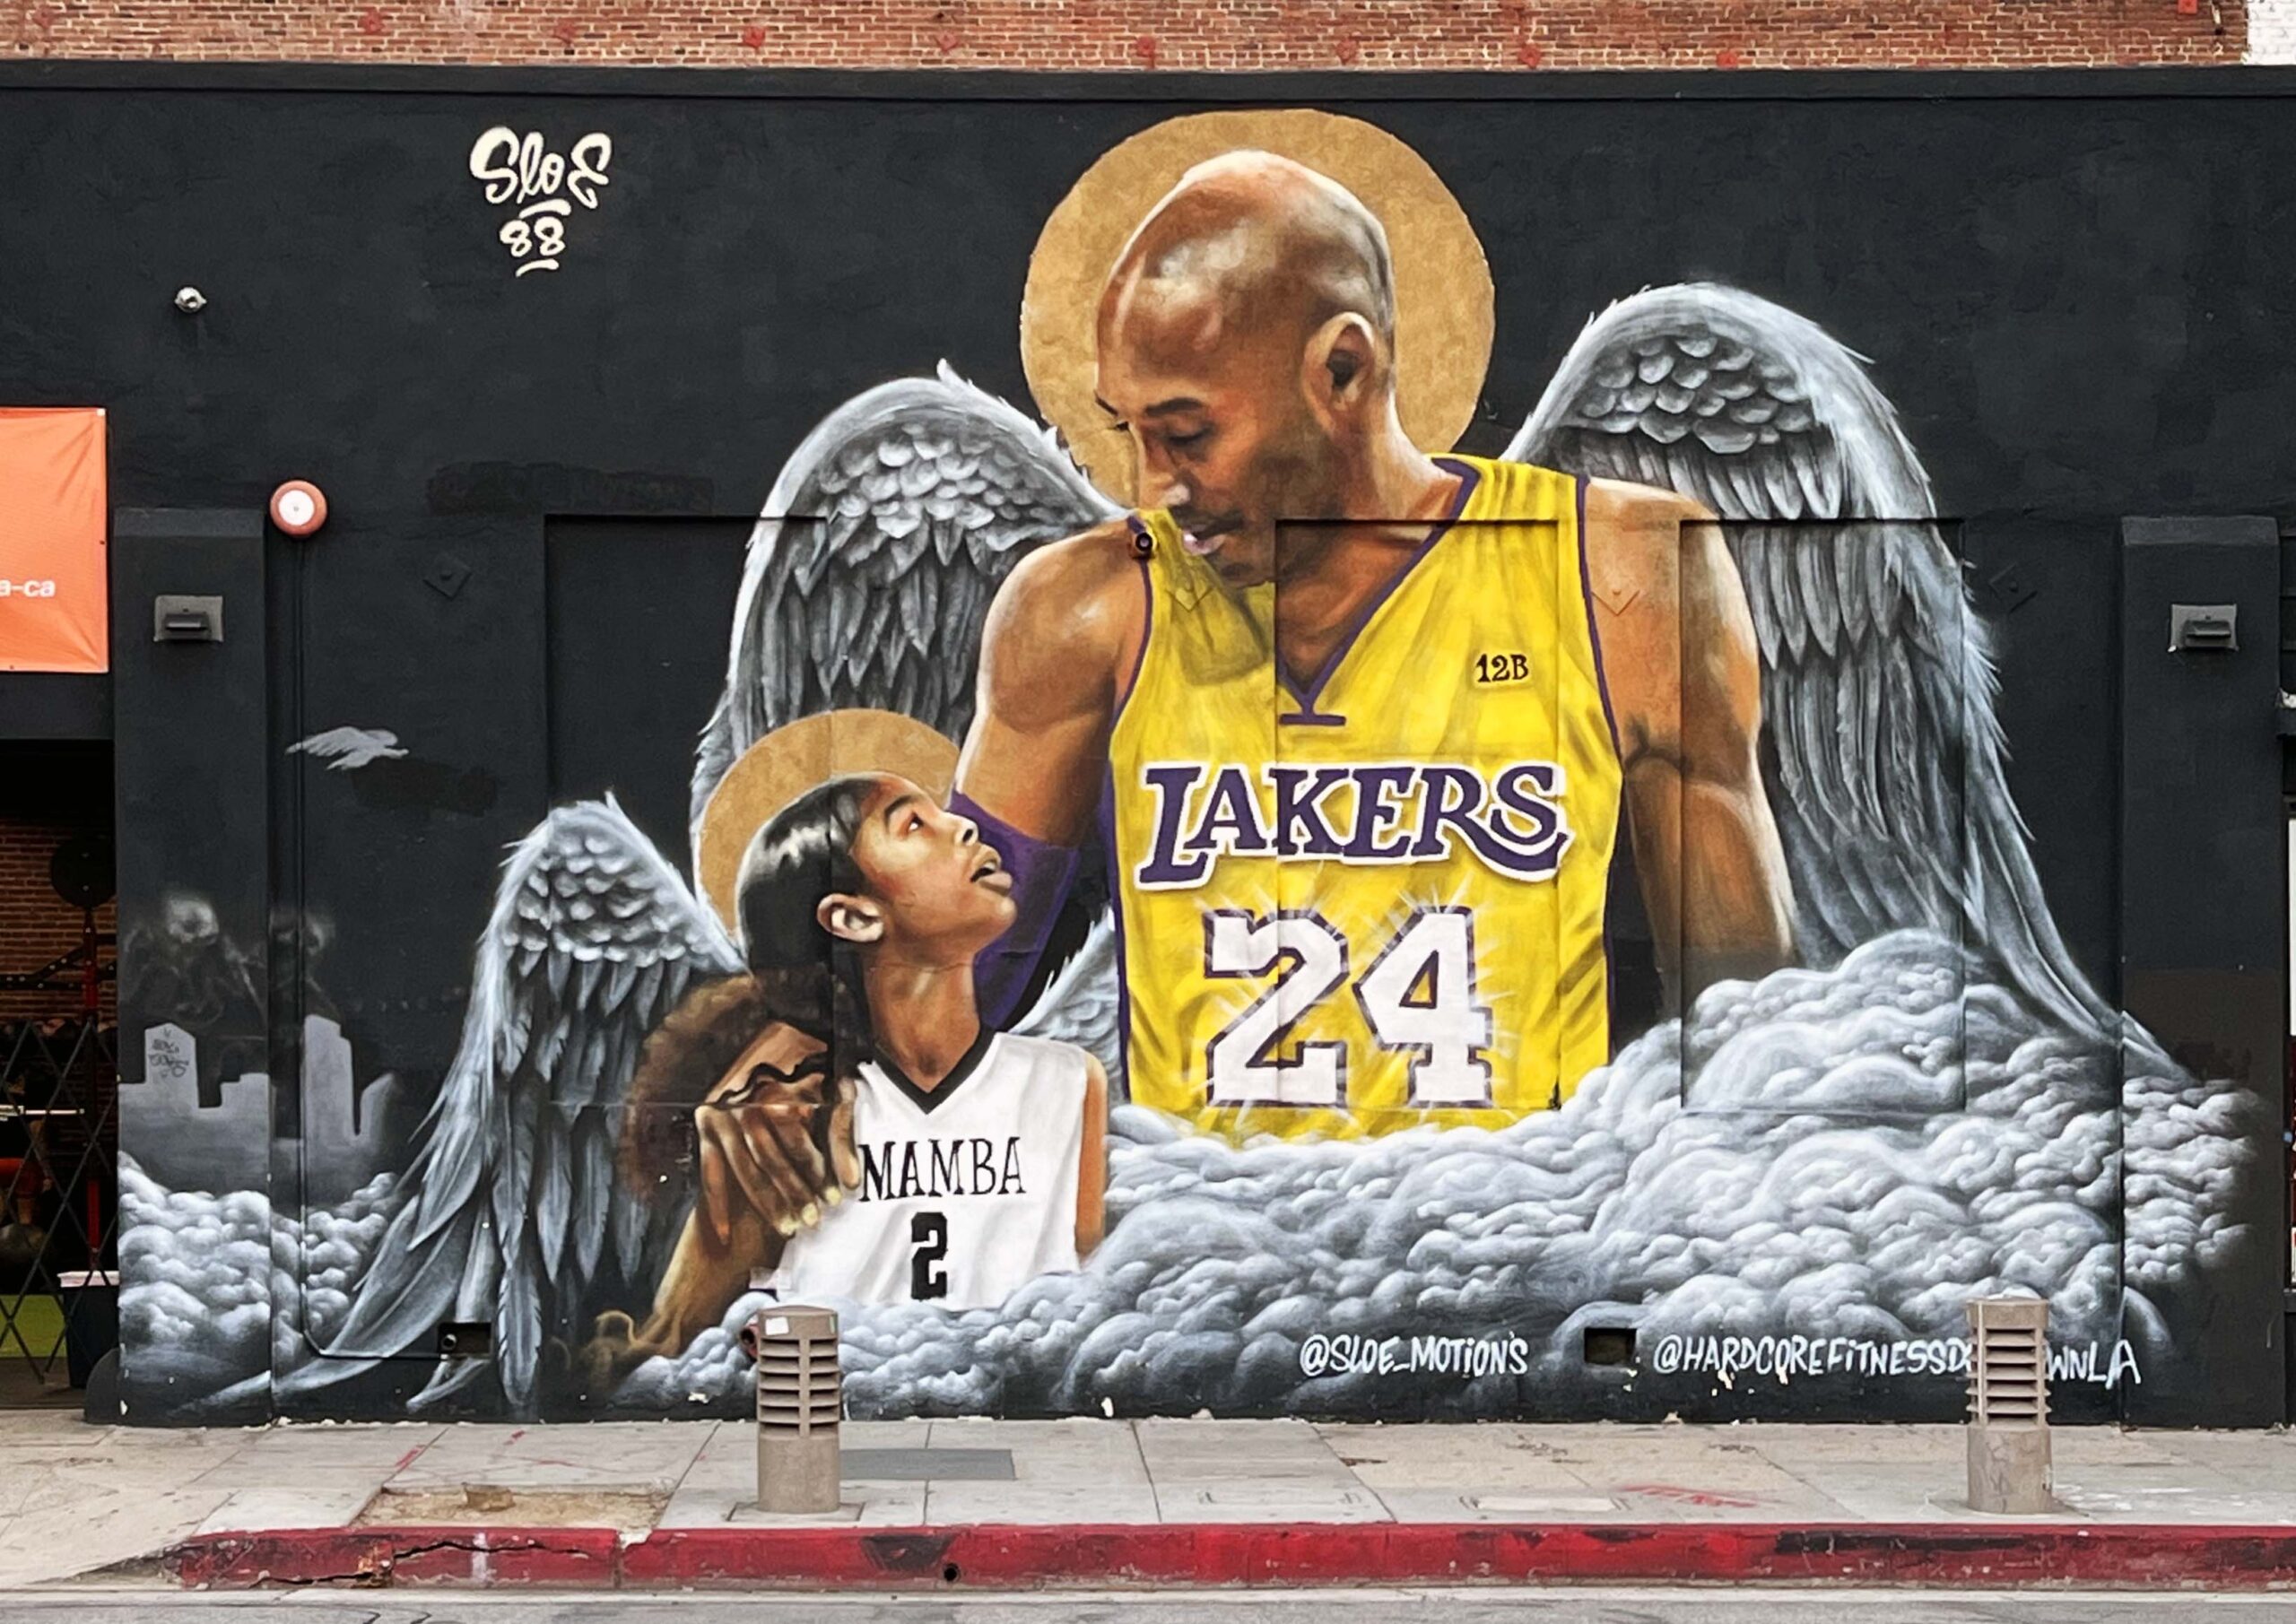 Mural of Kobe and Gianna Bryant